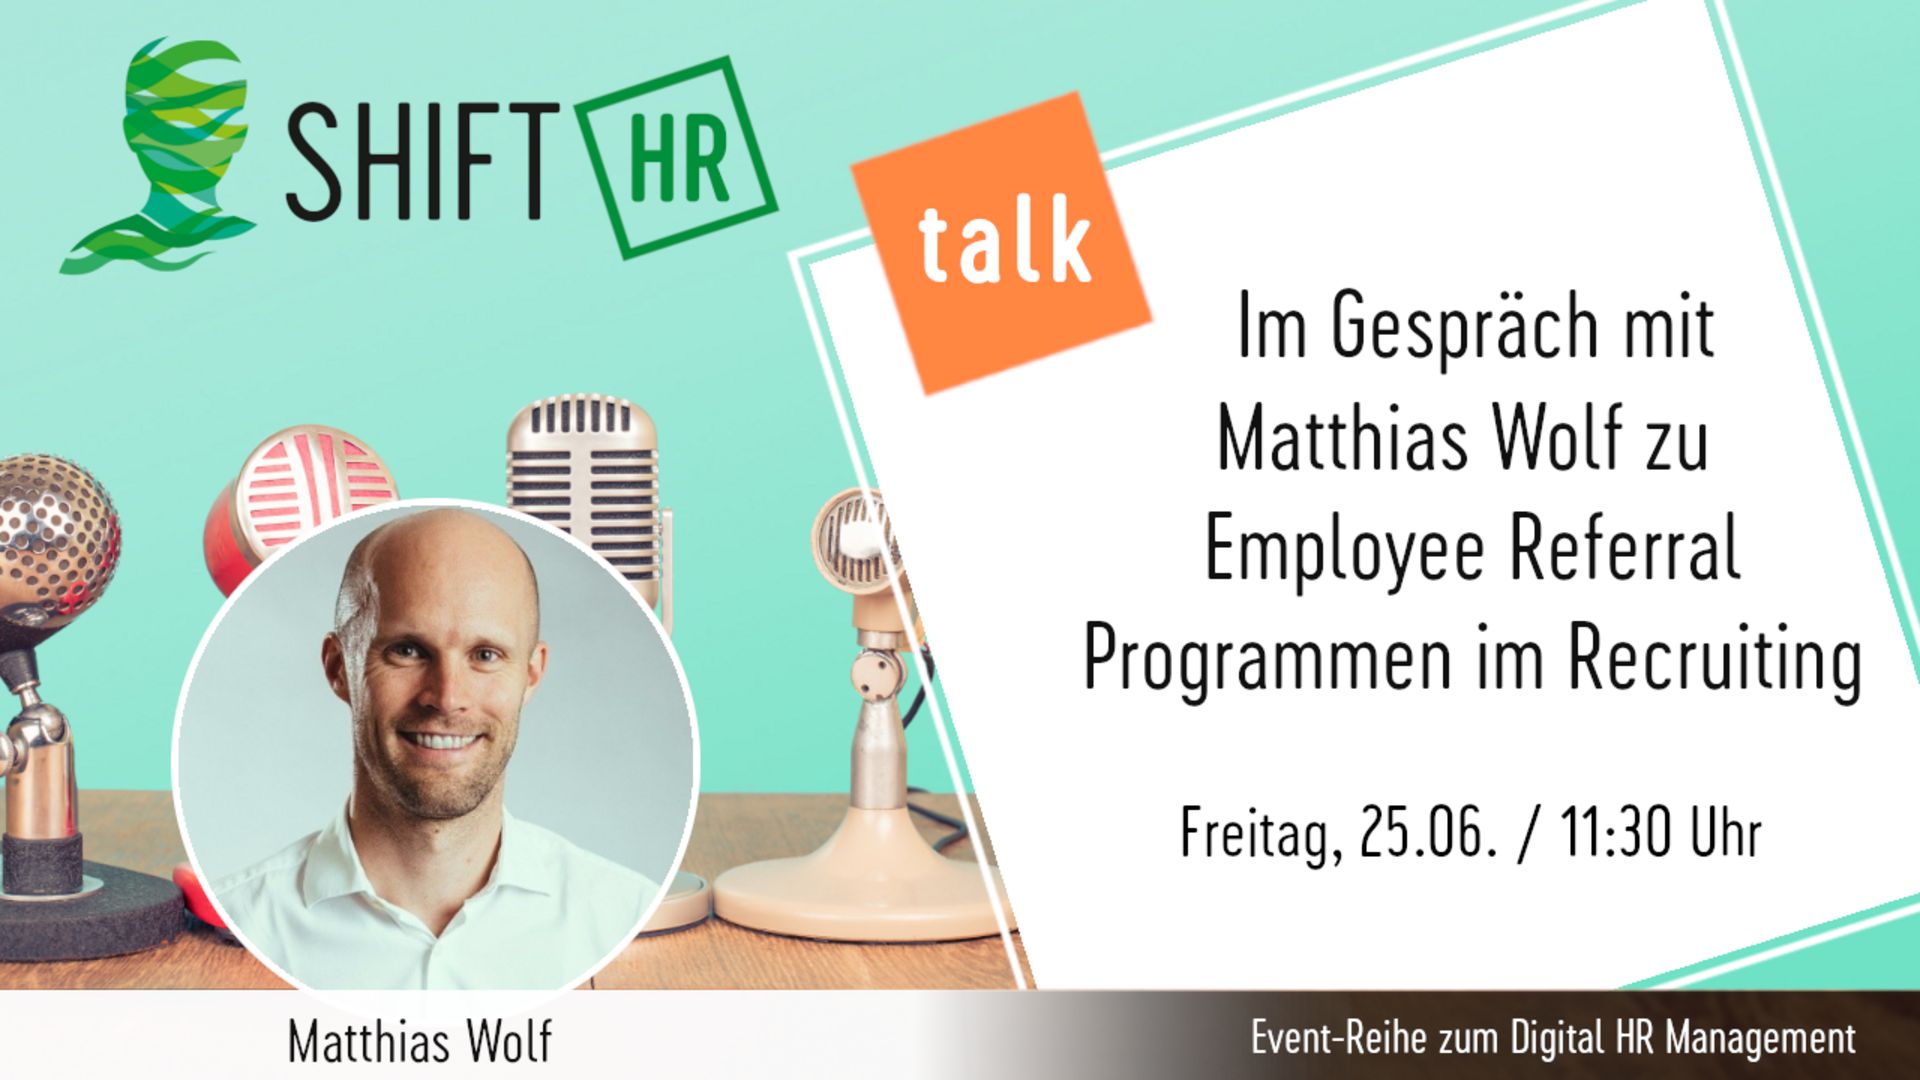 Im Gespräch mit Matthias Wolf zu Employee Referral Programmen im Recruiting